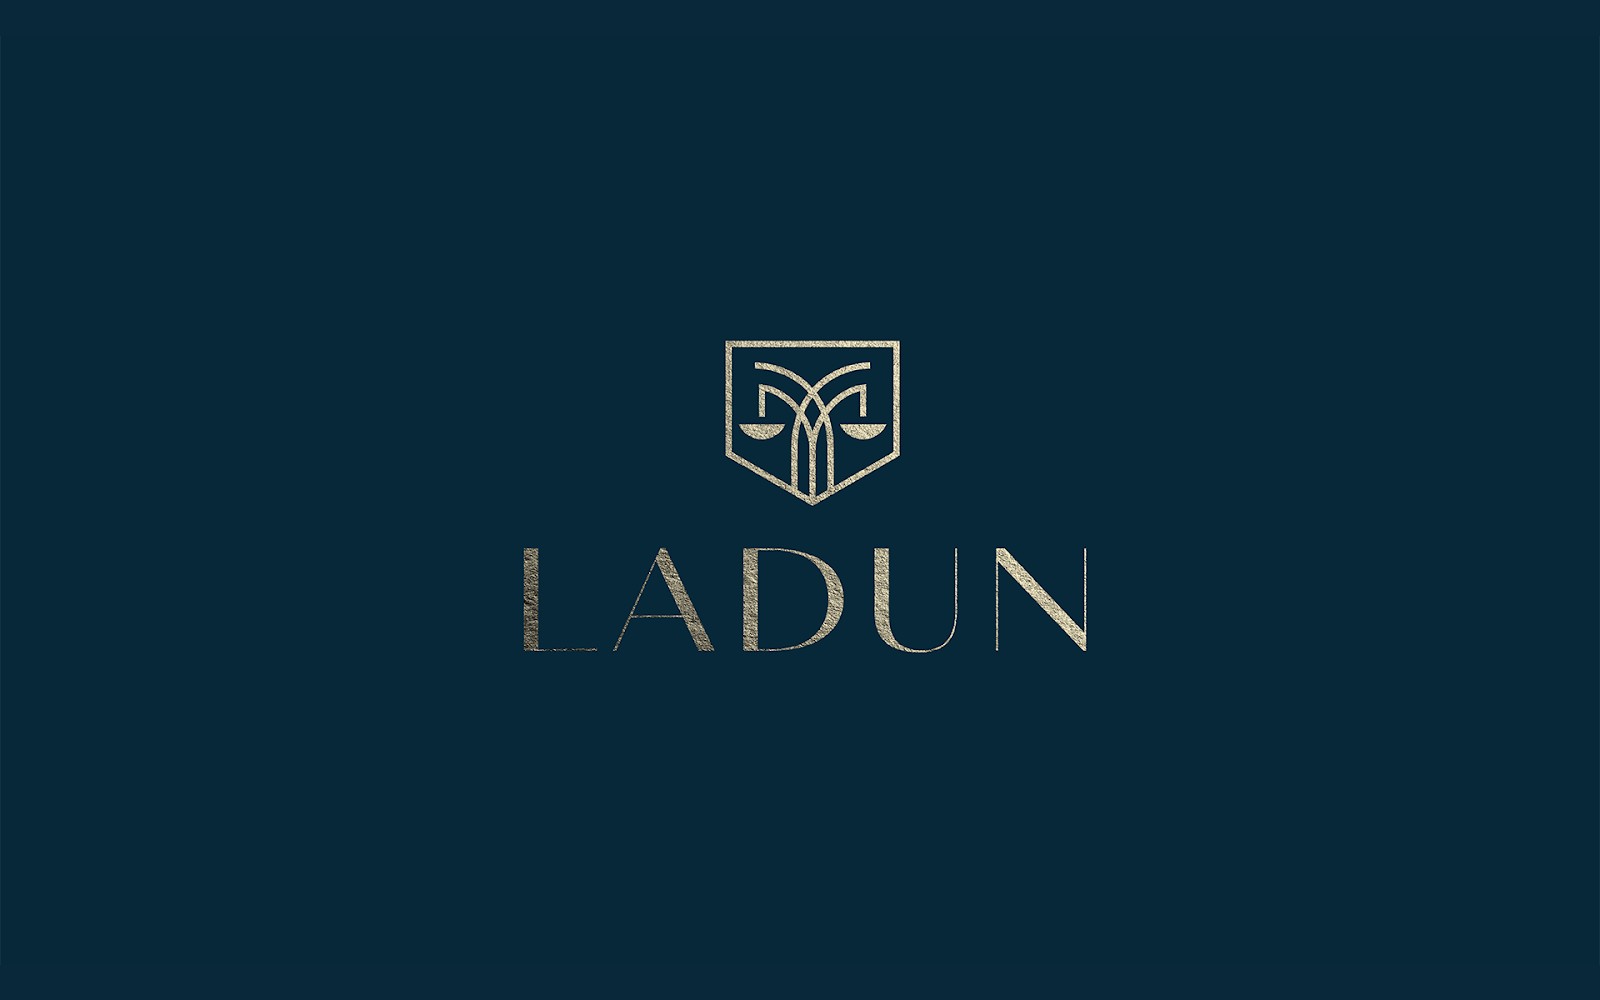 法律咨询平台Ladun视觉形象设计